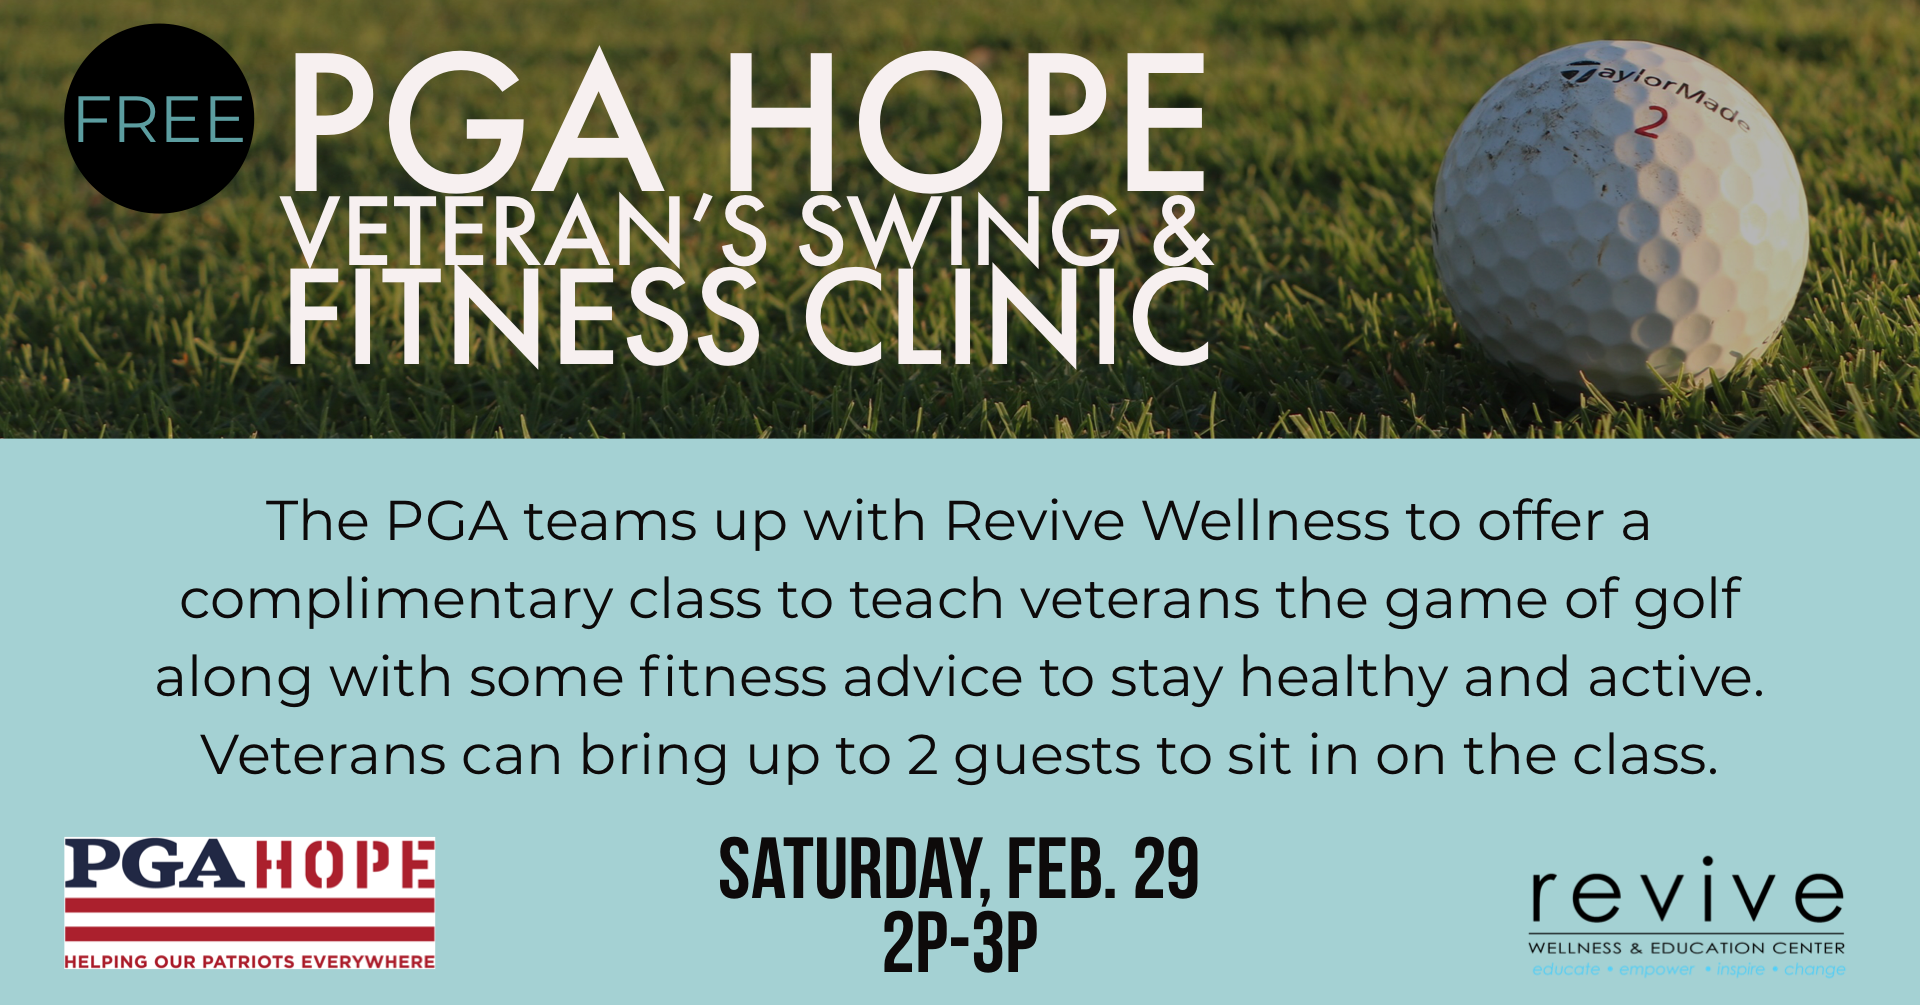 PGA HOPE Veteran’s Swing & Fitness Clinic